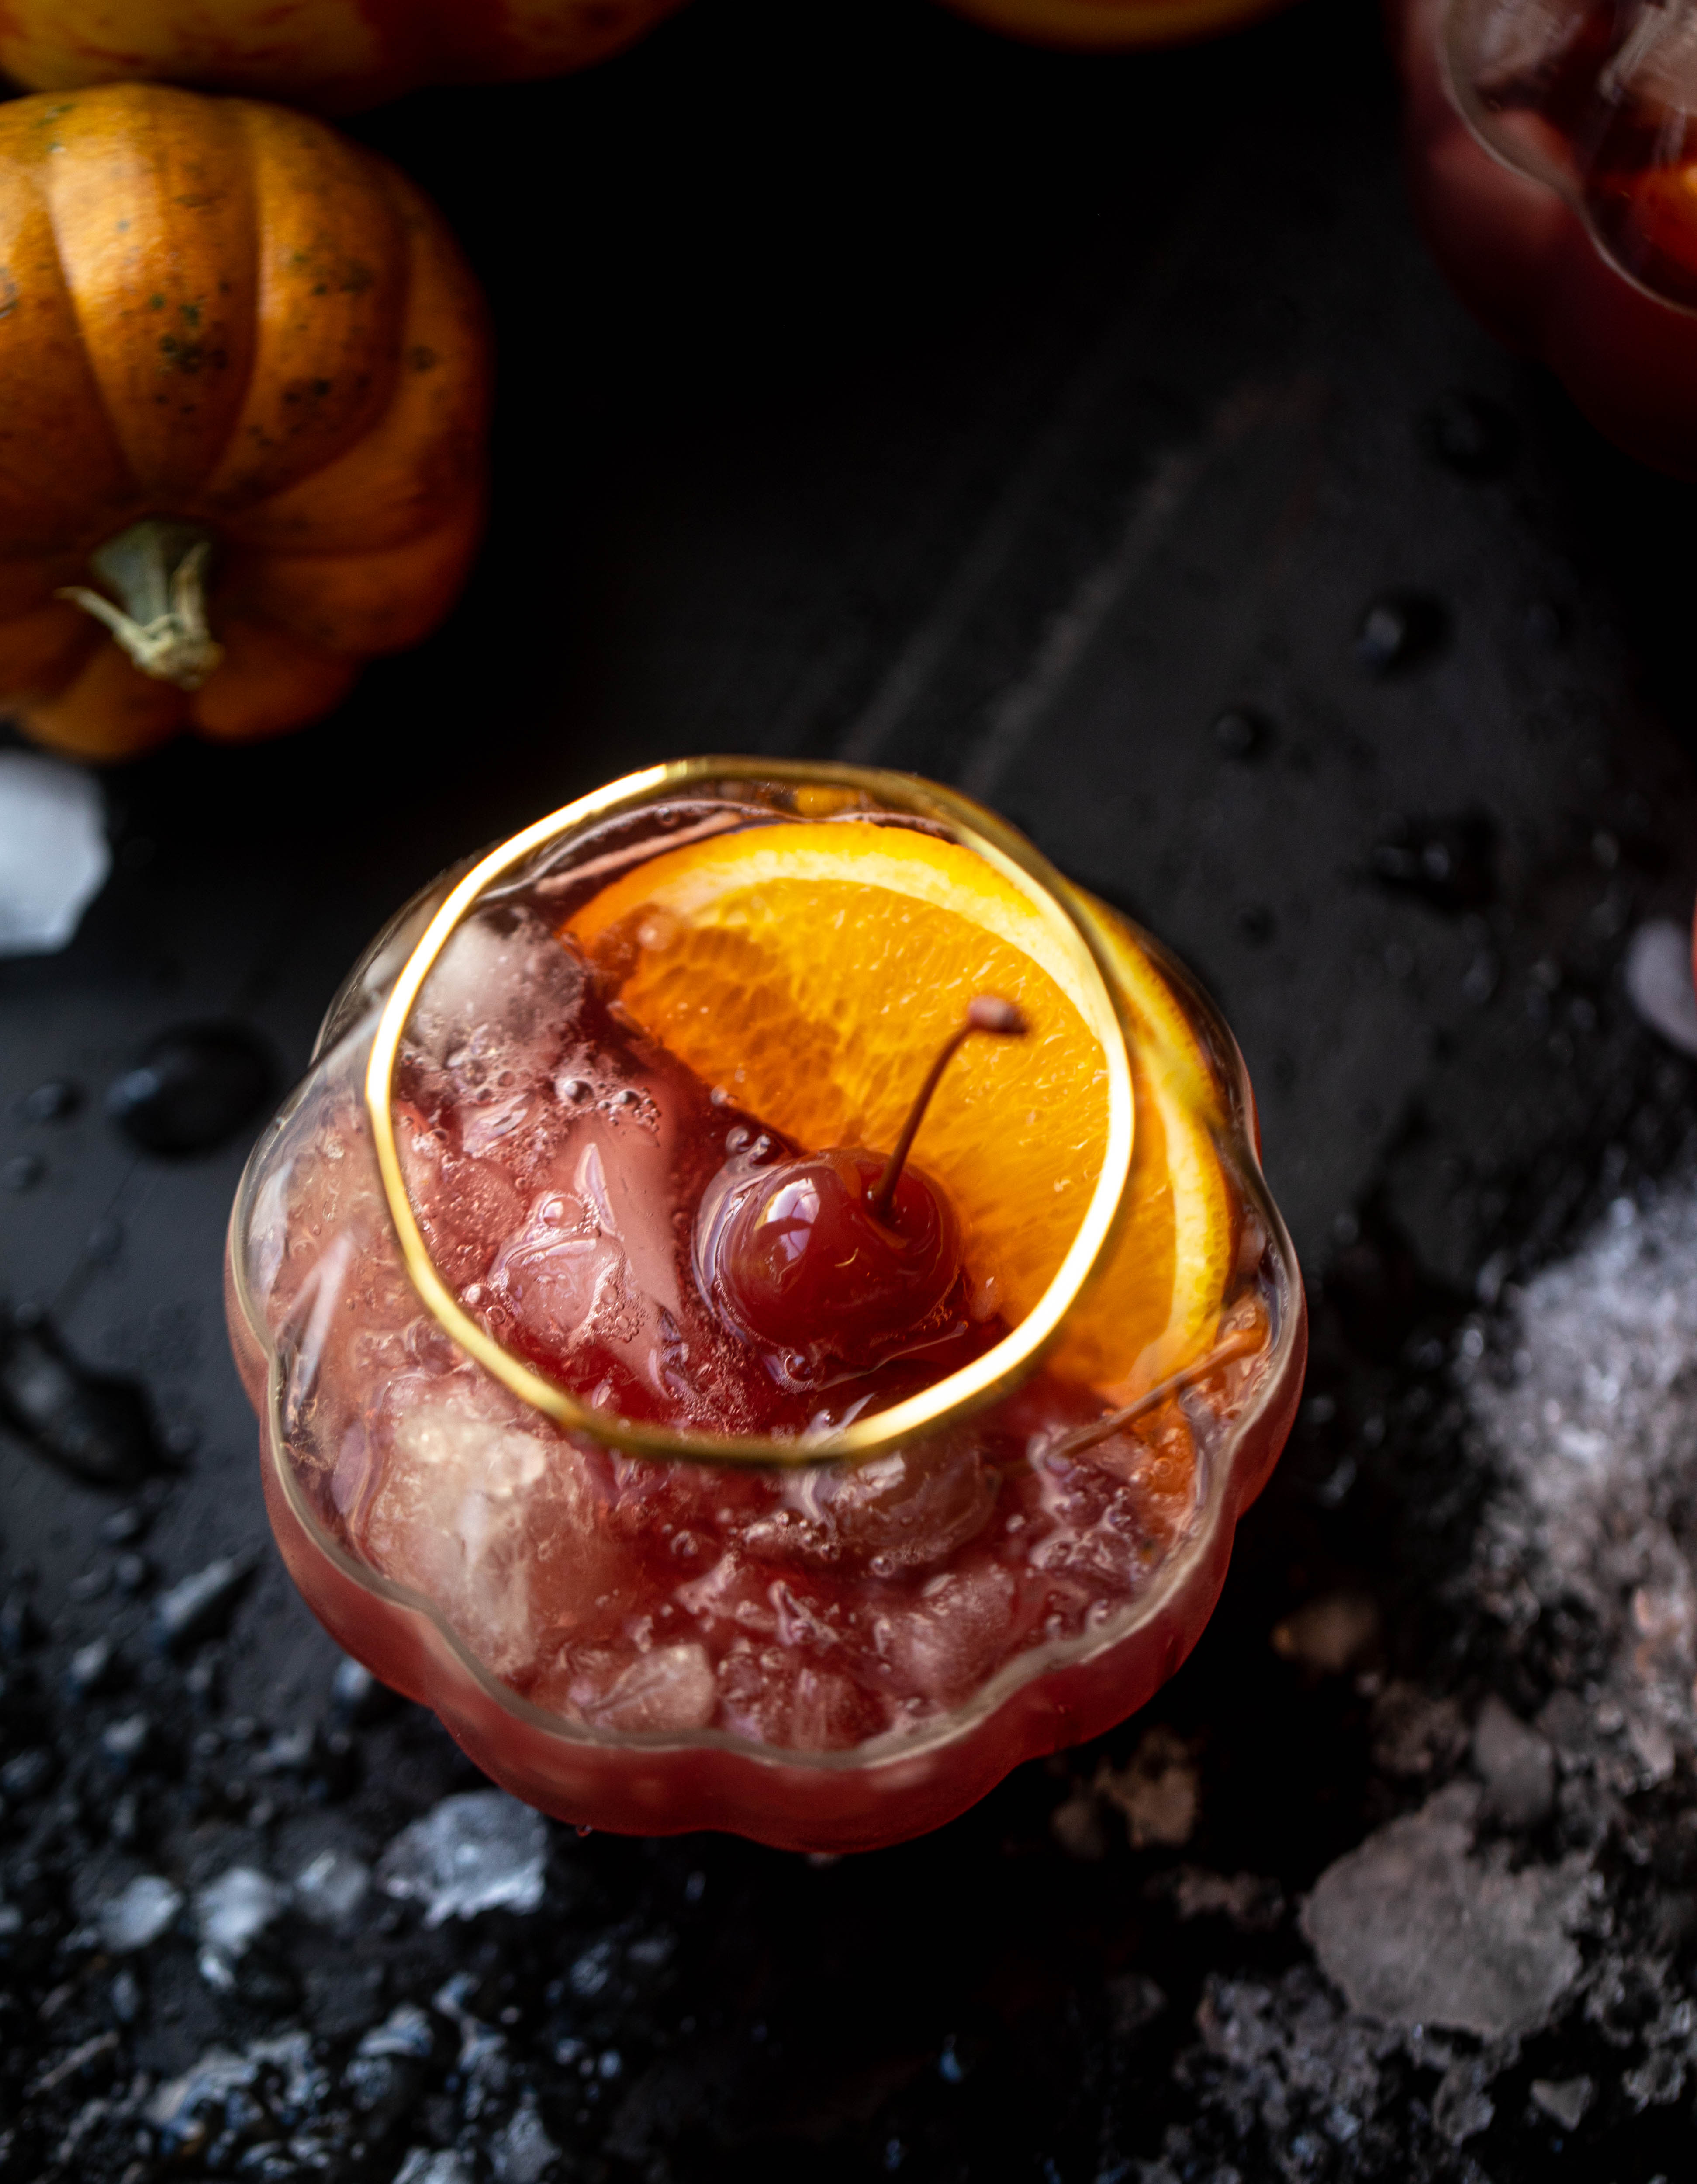 一个有趣的万圣节punch，每个人都可以享受!Hocus pocus潘趣酒充满了苹果酒、橘子和蔓越莓，味道非常美味!